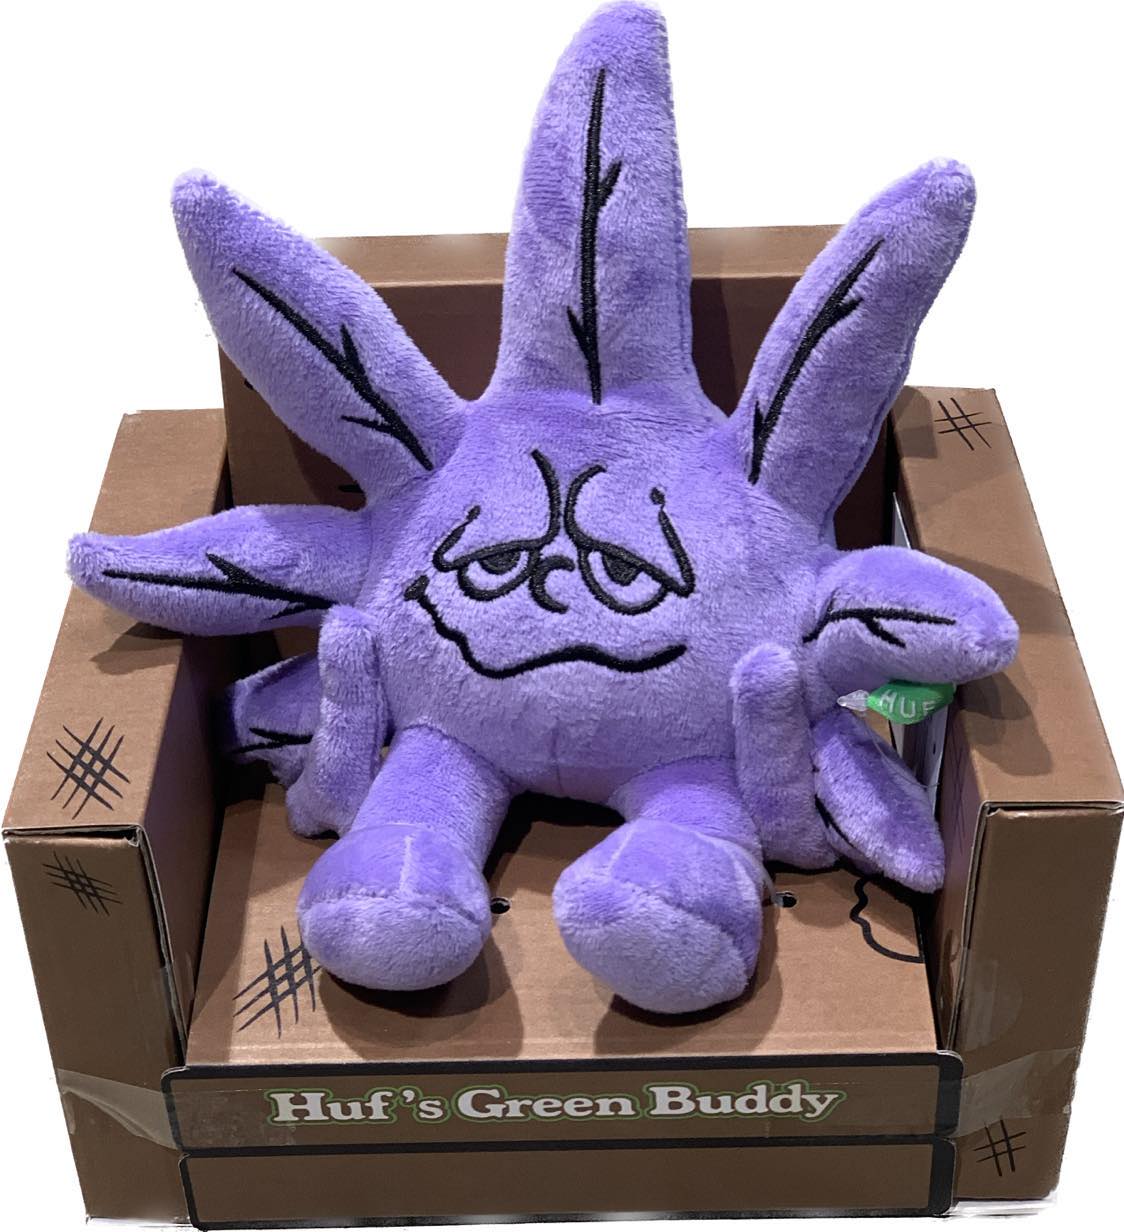 Huf Purple Buddy Plush